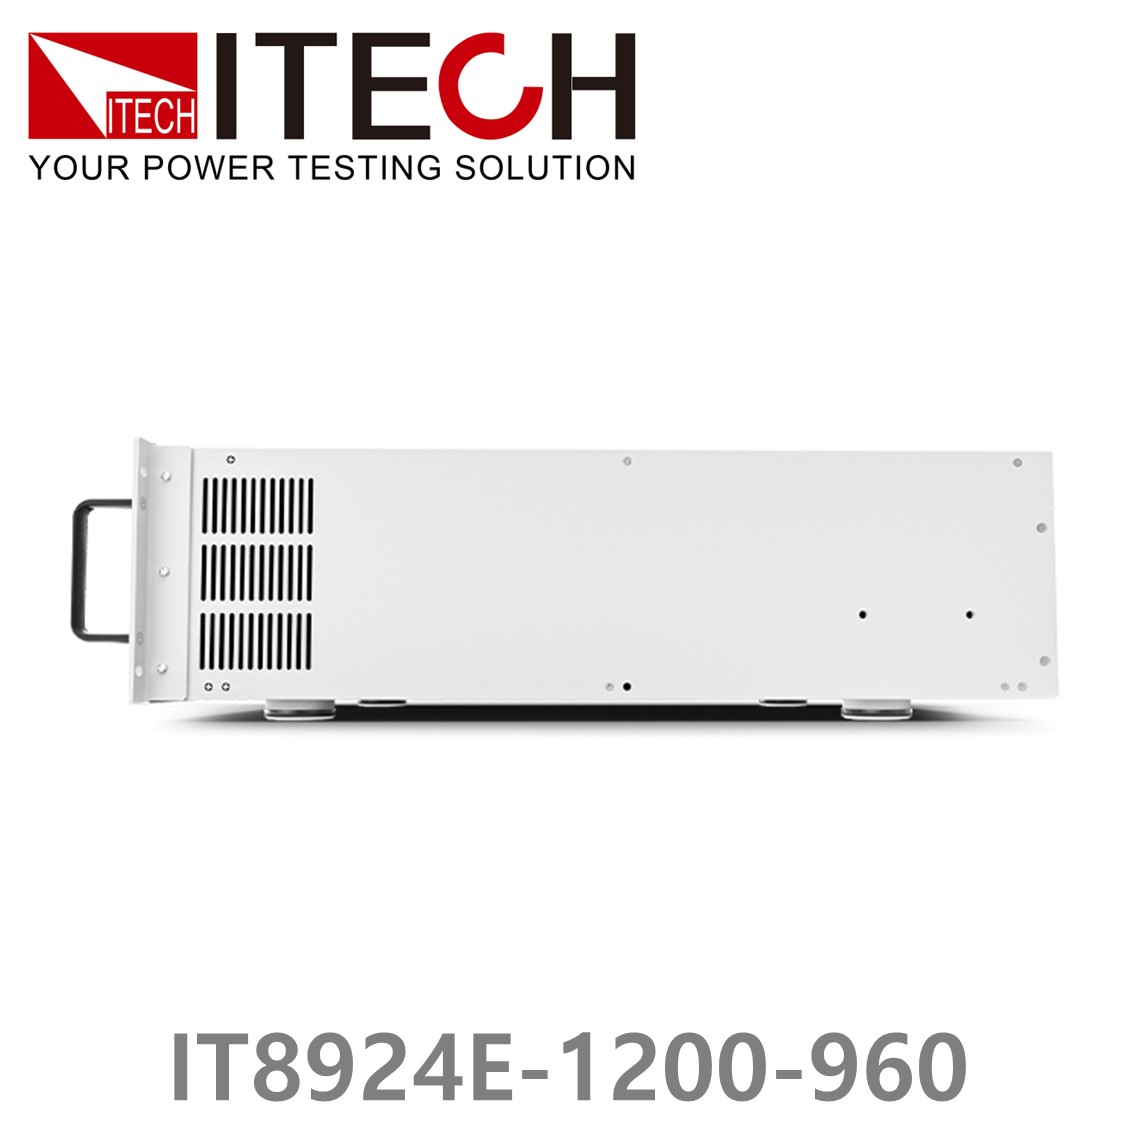 [ ITECH ] IT8924E-1200-960  고성능 고전력 DC 전자로드 1200V/960A/24kW (27U)